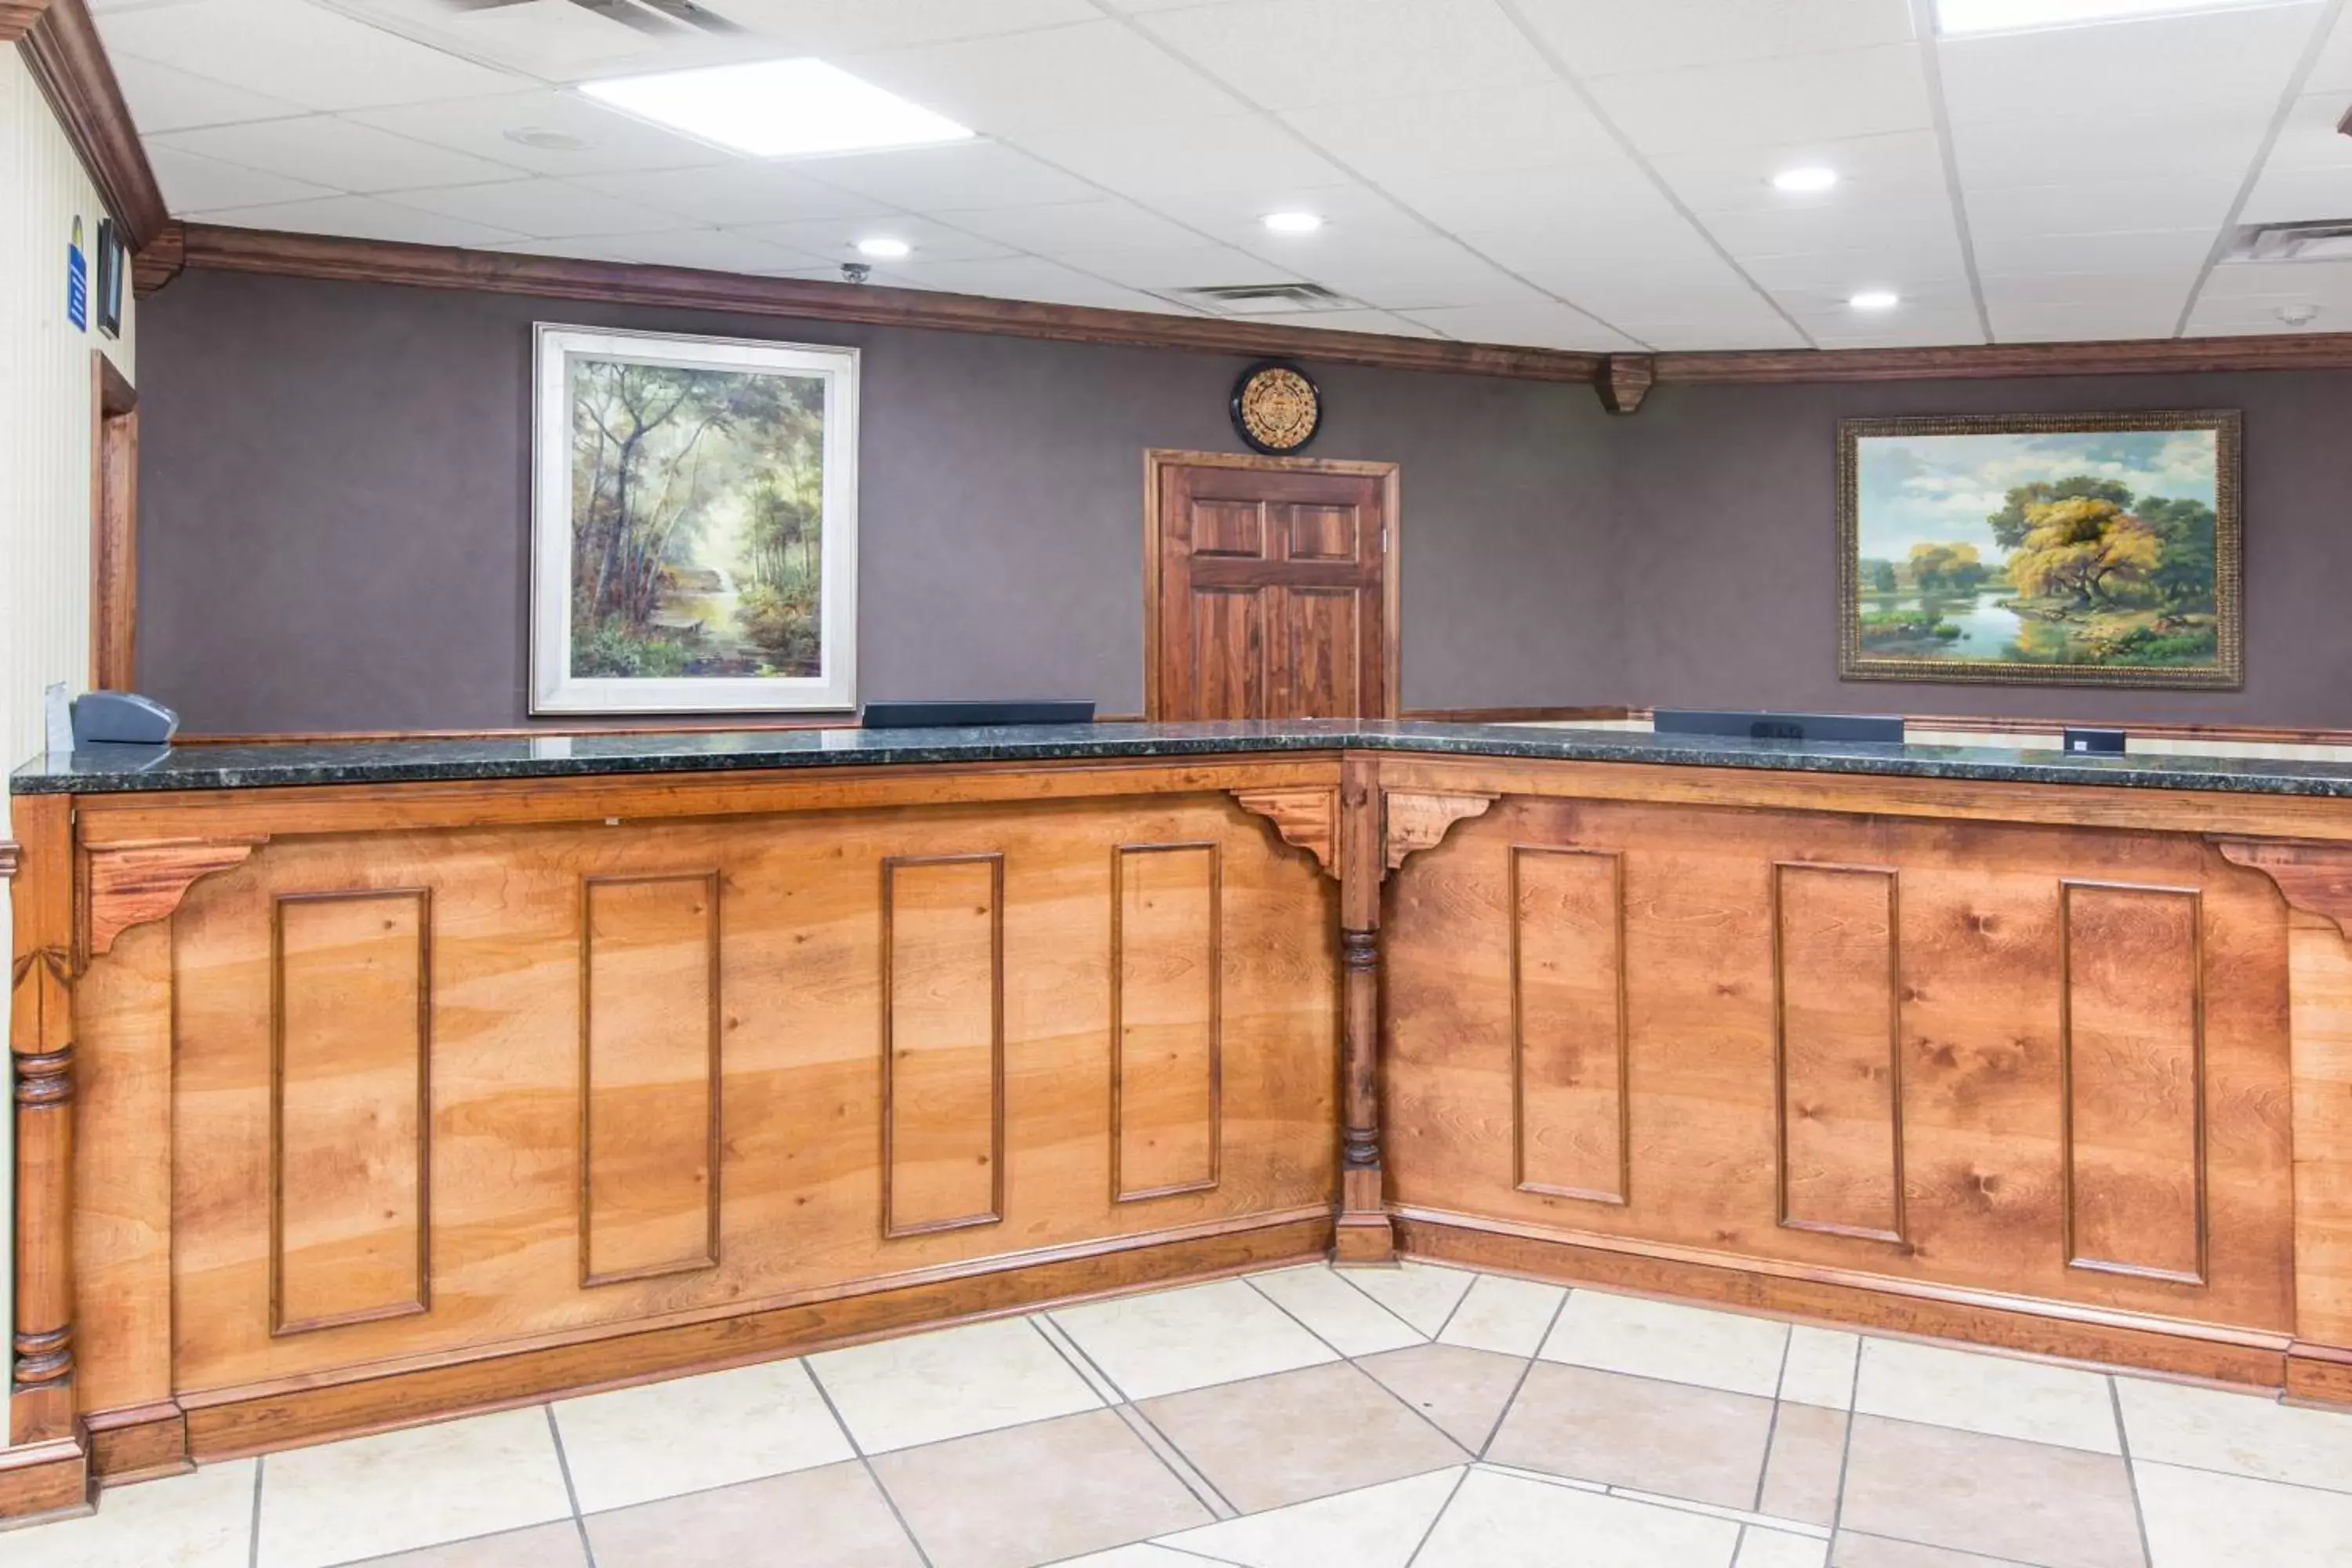 Lobby or reception, Lobby/Reception in Days Inn by Wyndham Columbus-North Fort Benning